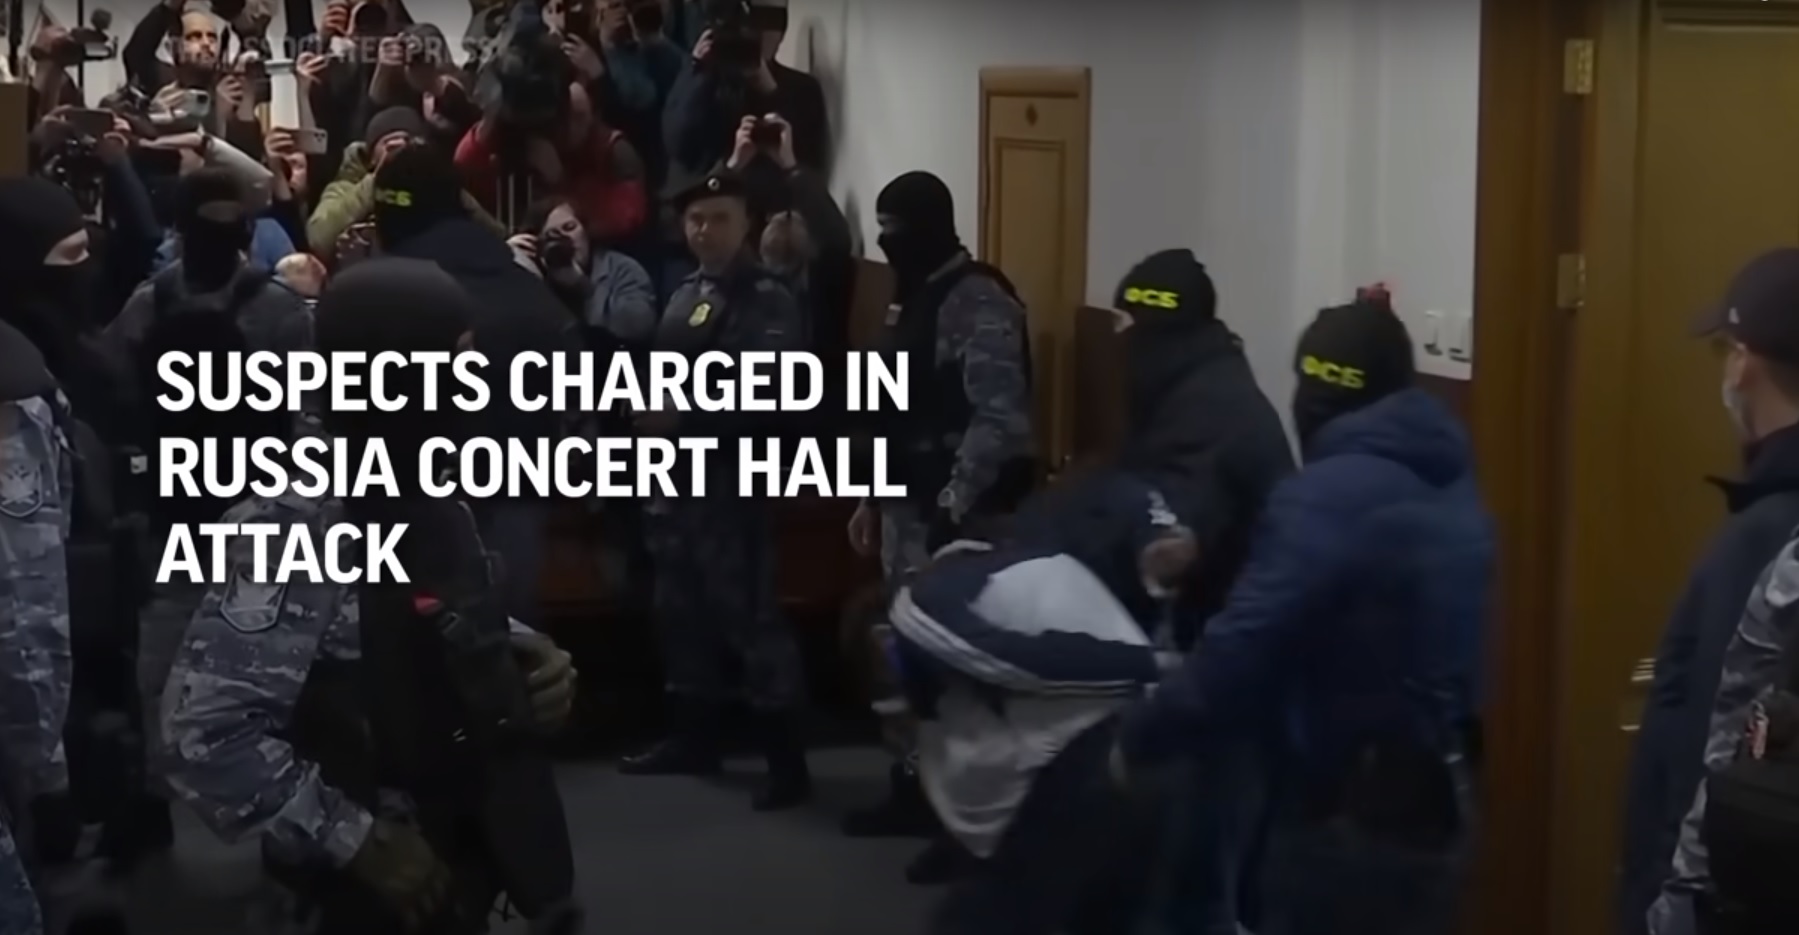 Előzetes letartóztatásba helyezték a moszkvai terrortámadás négy vádlottját + videó